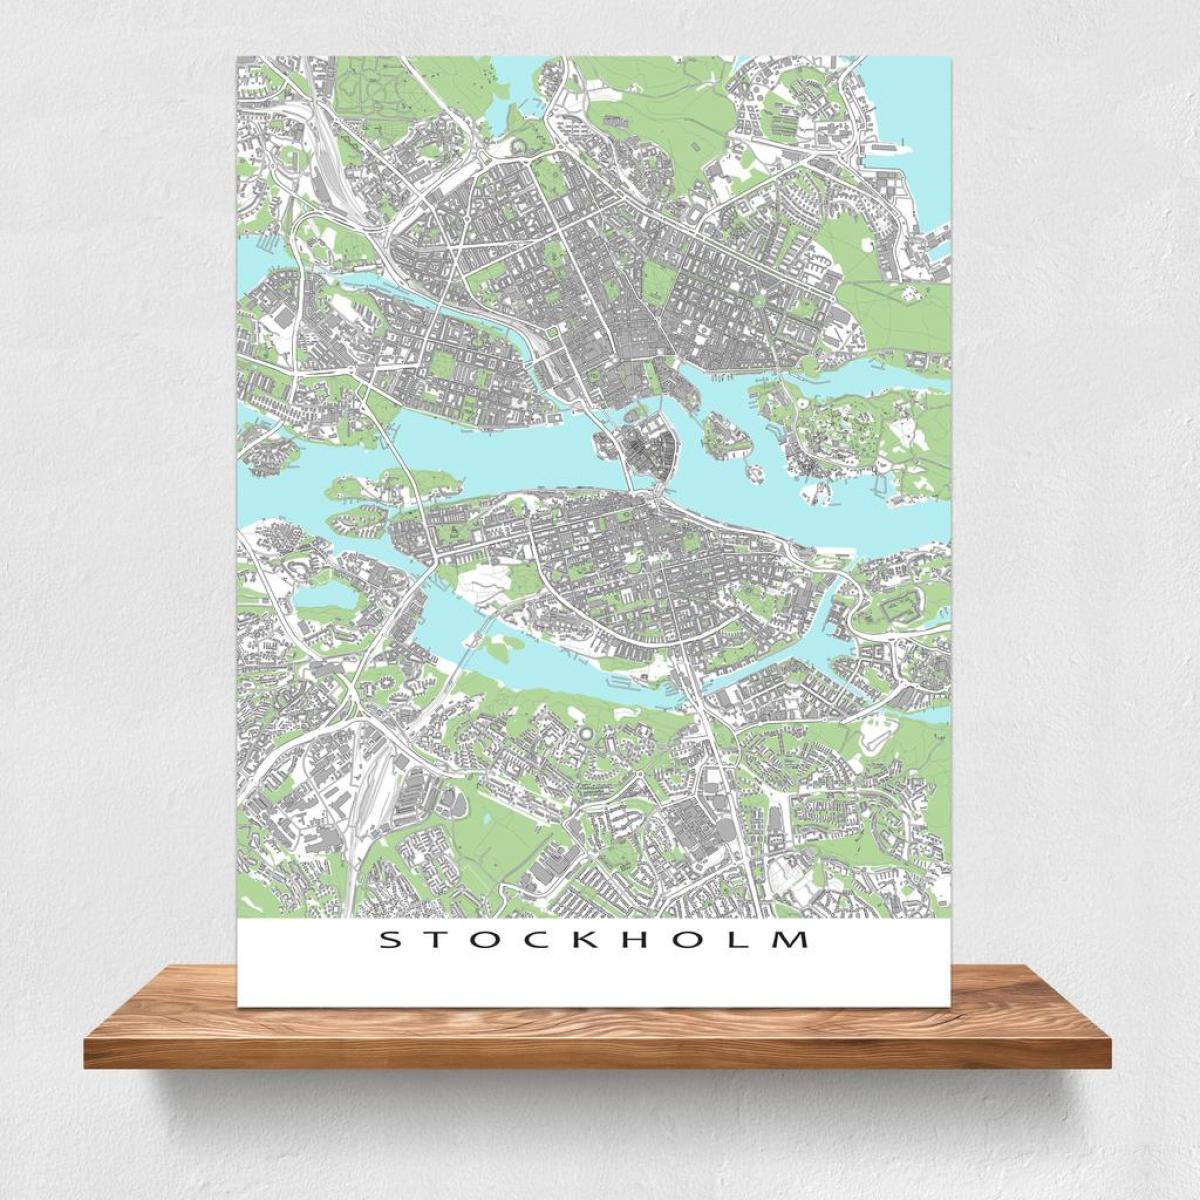 नक्शा स्टॉकहोम के मानचित्र प्रिंट